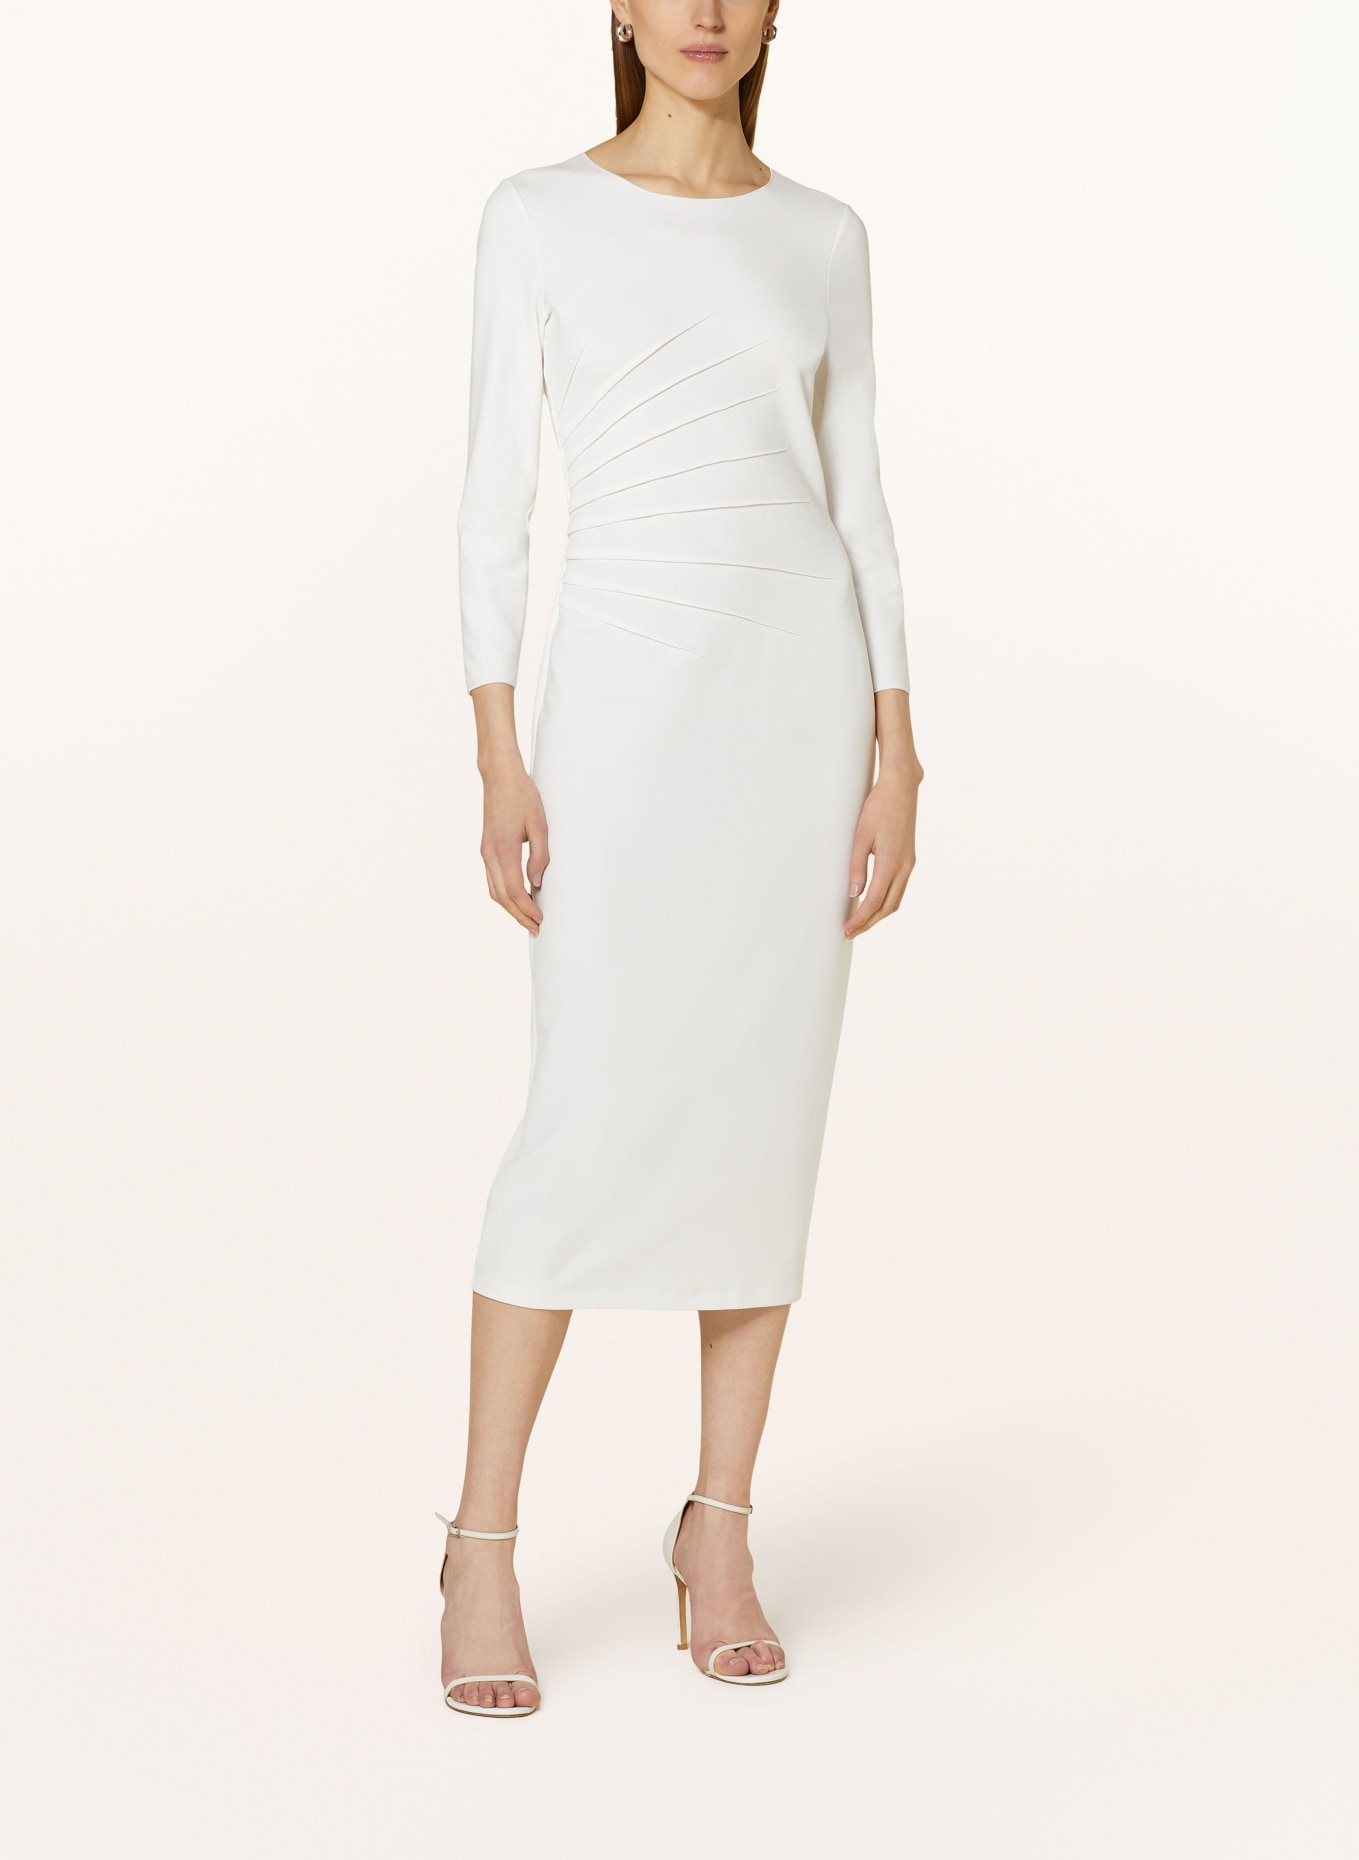 EMPORIO ARMANI Sheath dress in jersey, Color: WHITE (Image 2)